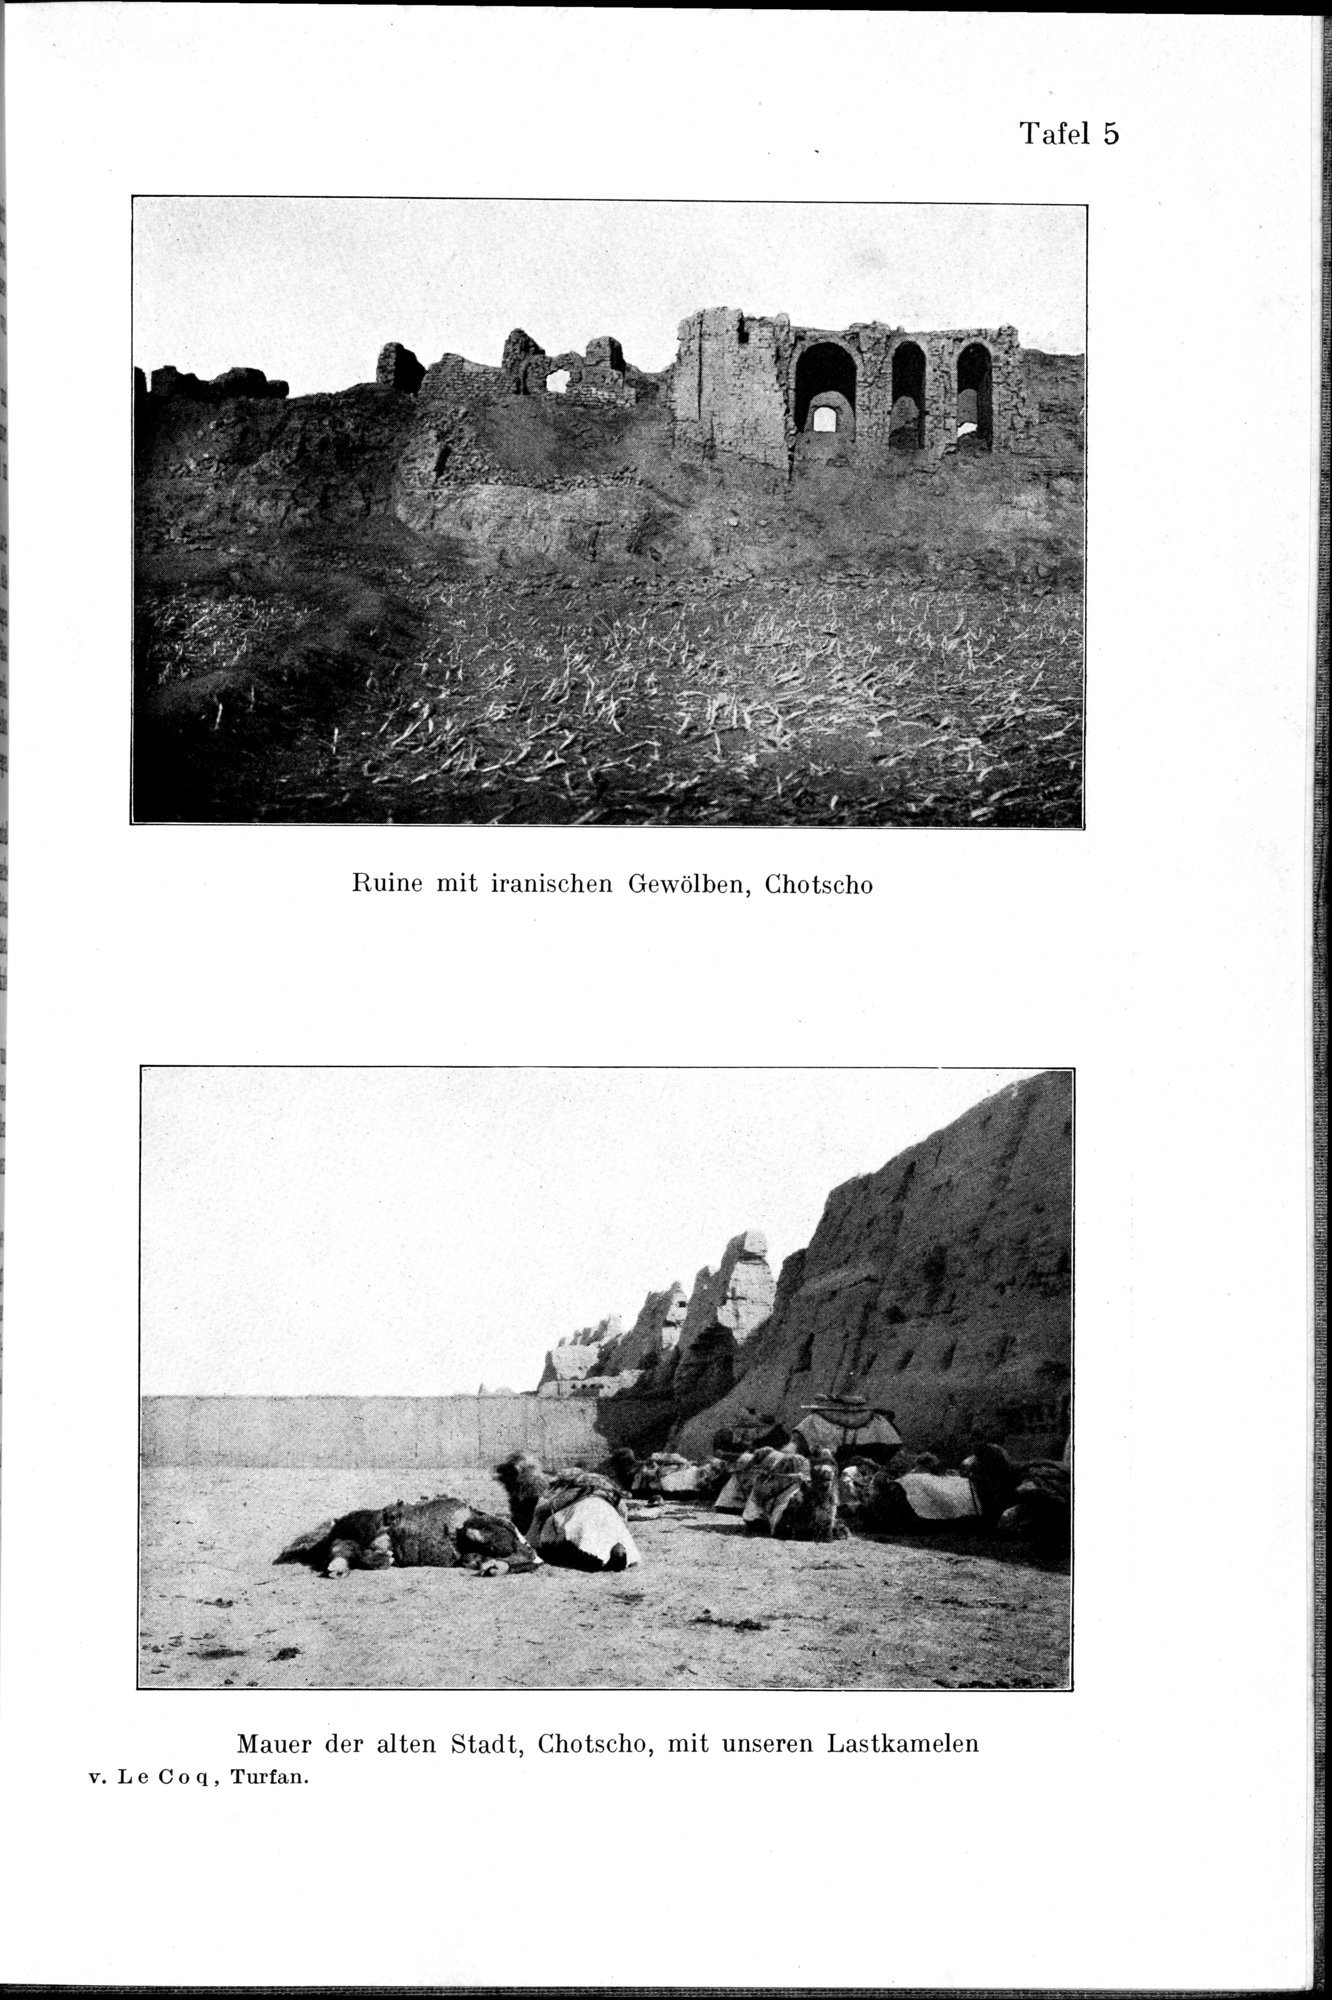 Auf Hellas Spuren in Ostturkistan : vol.1 / Page 53 (Grayscale High Resolution Image)